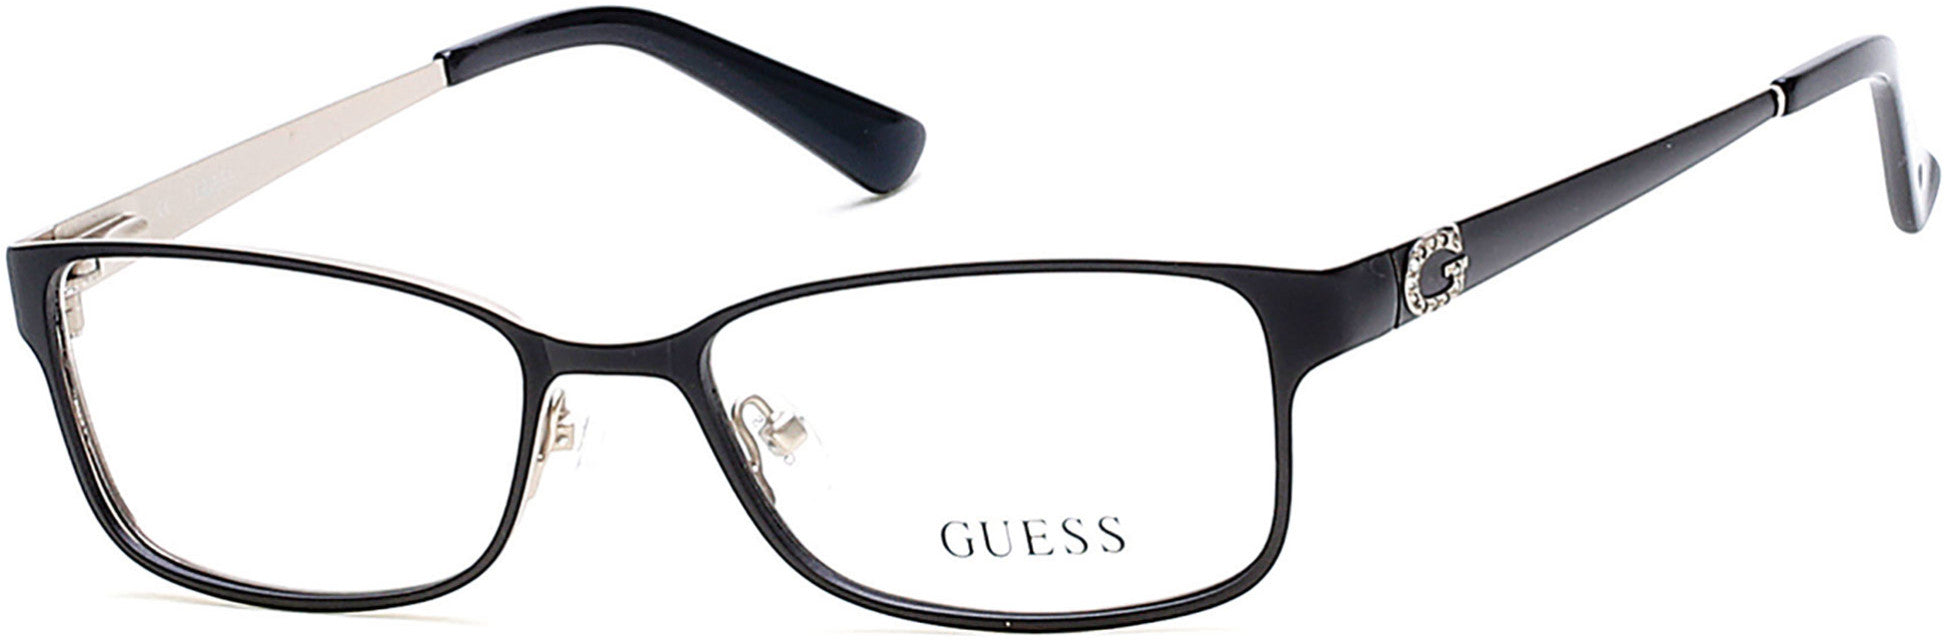 Guess GU2568 Rectangular Eyeglasses 002-002 - Matte Black